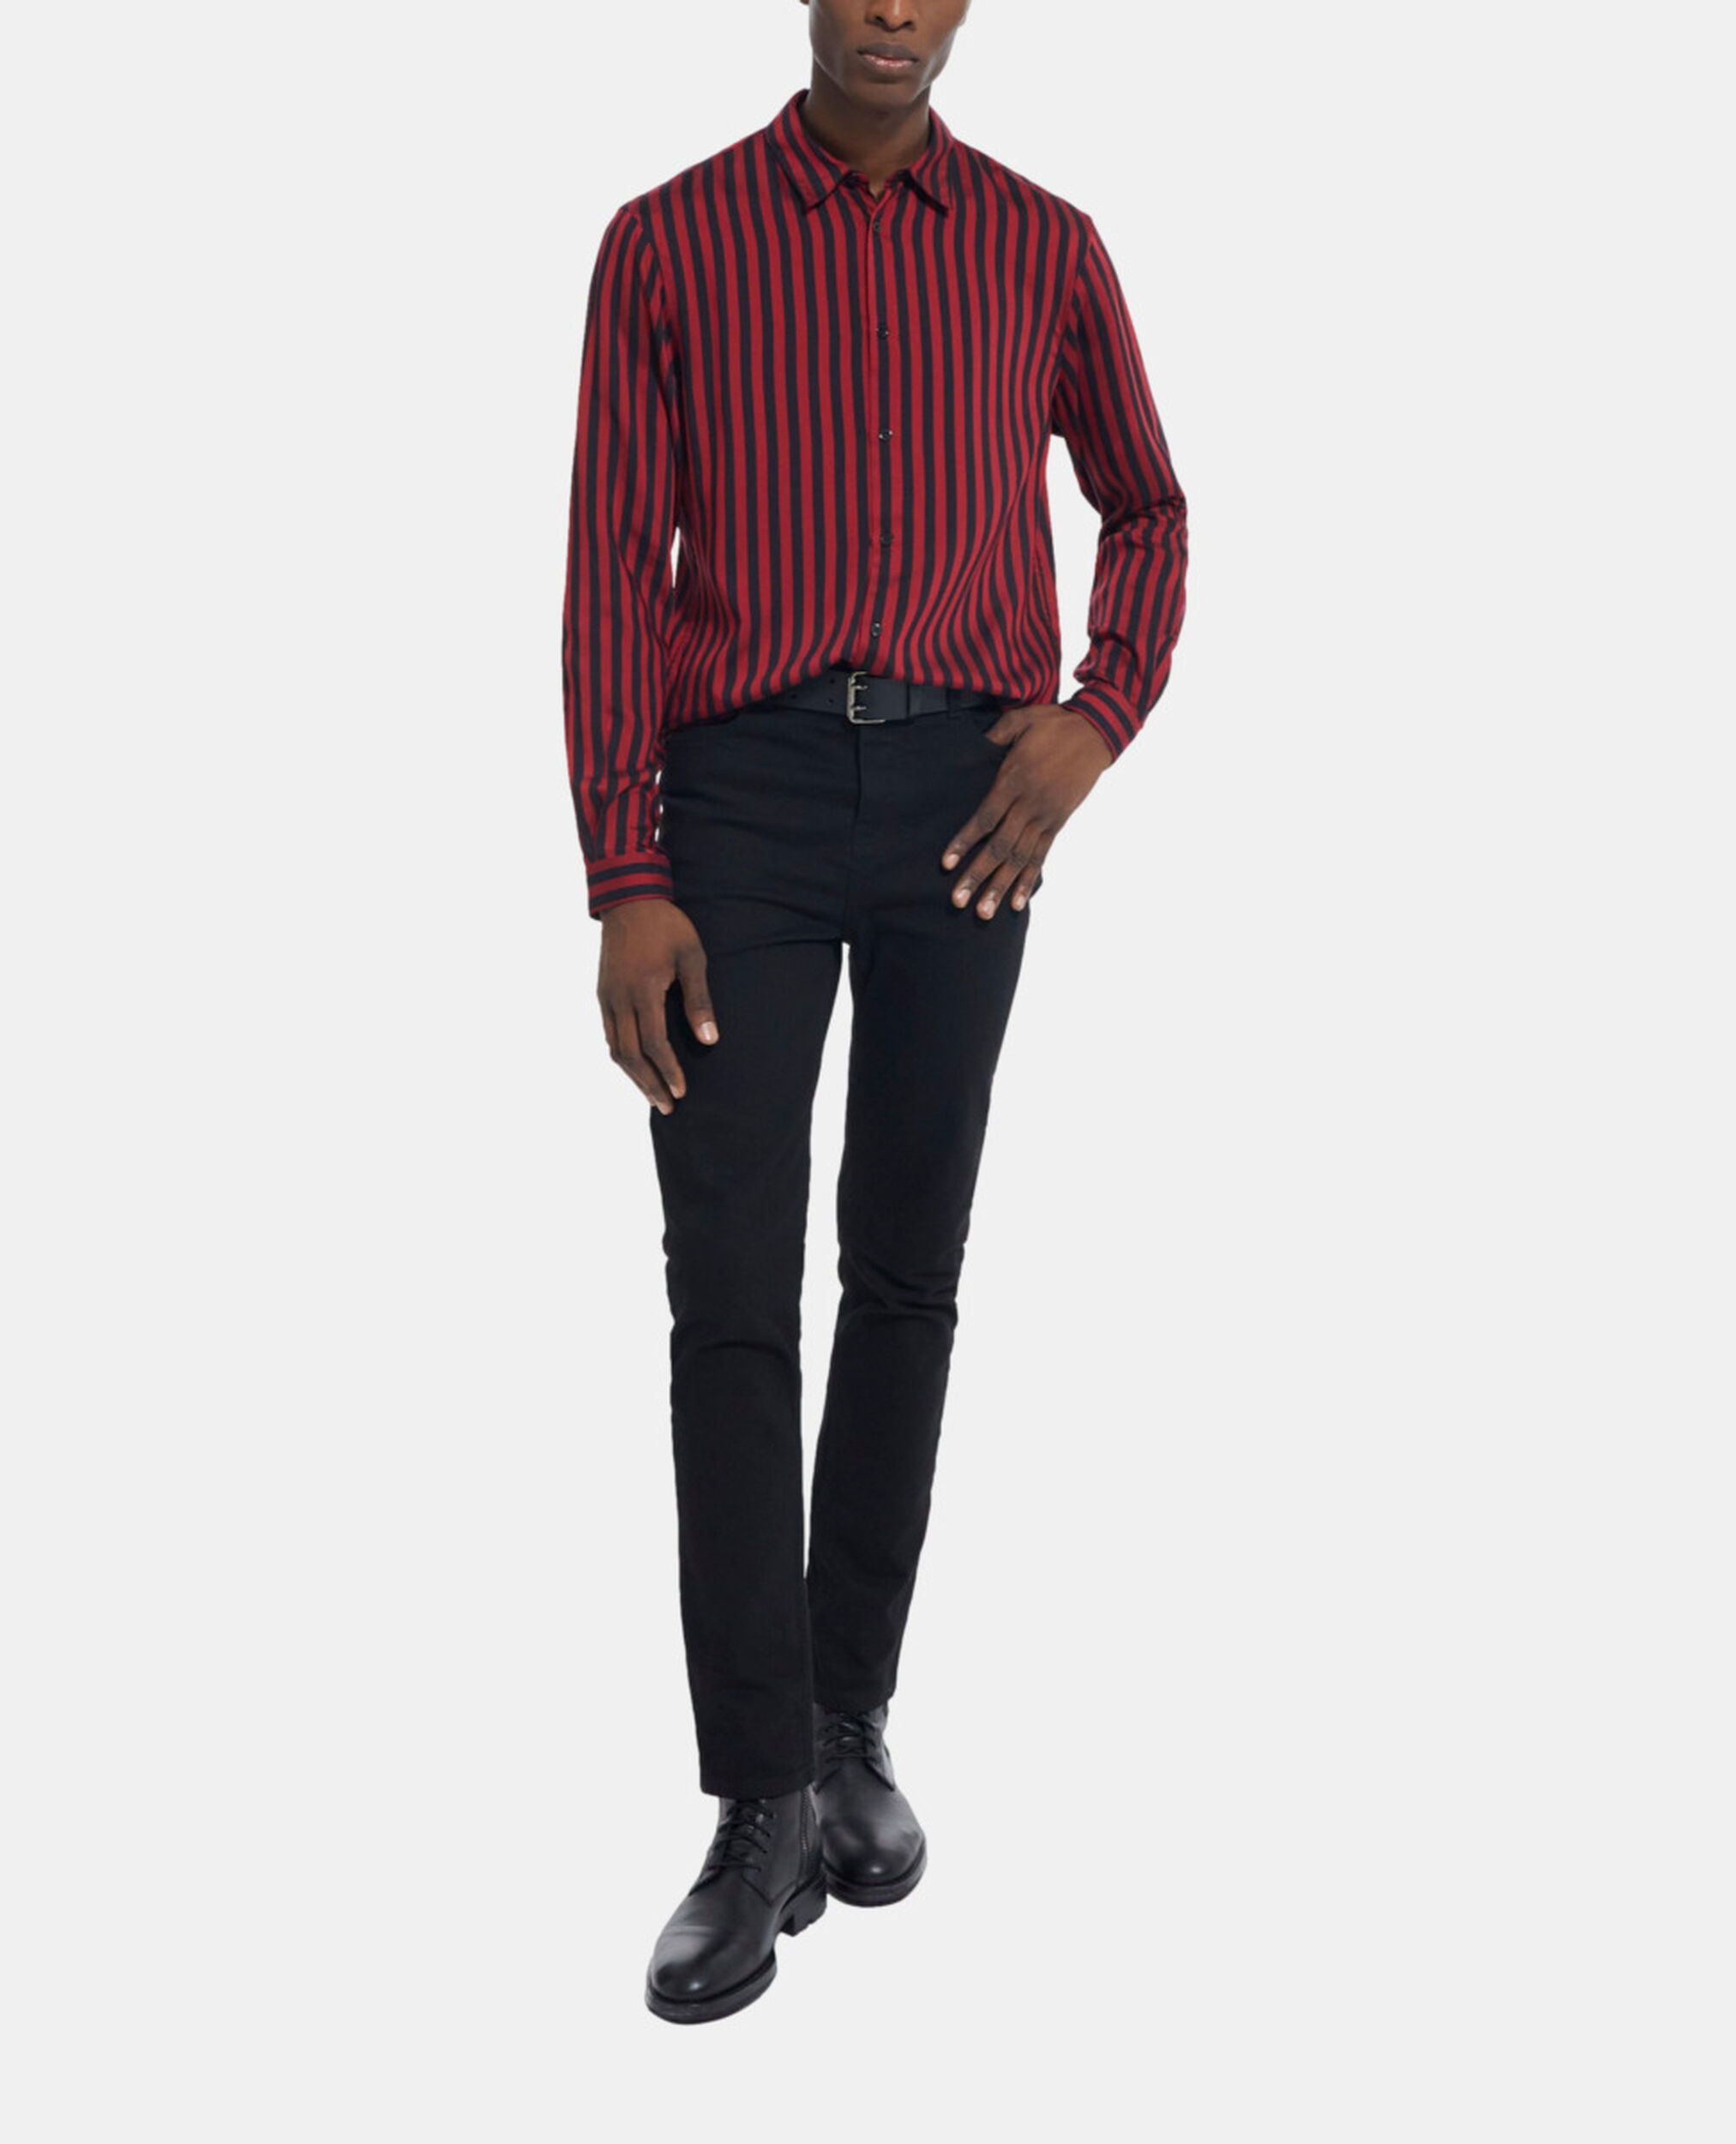 Camisa rayas con cuello clásico, RED / BLACK, hi-res image number null